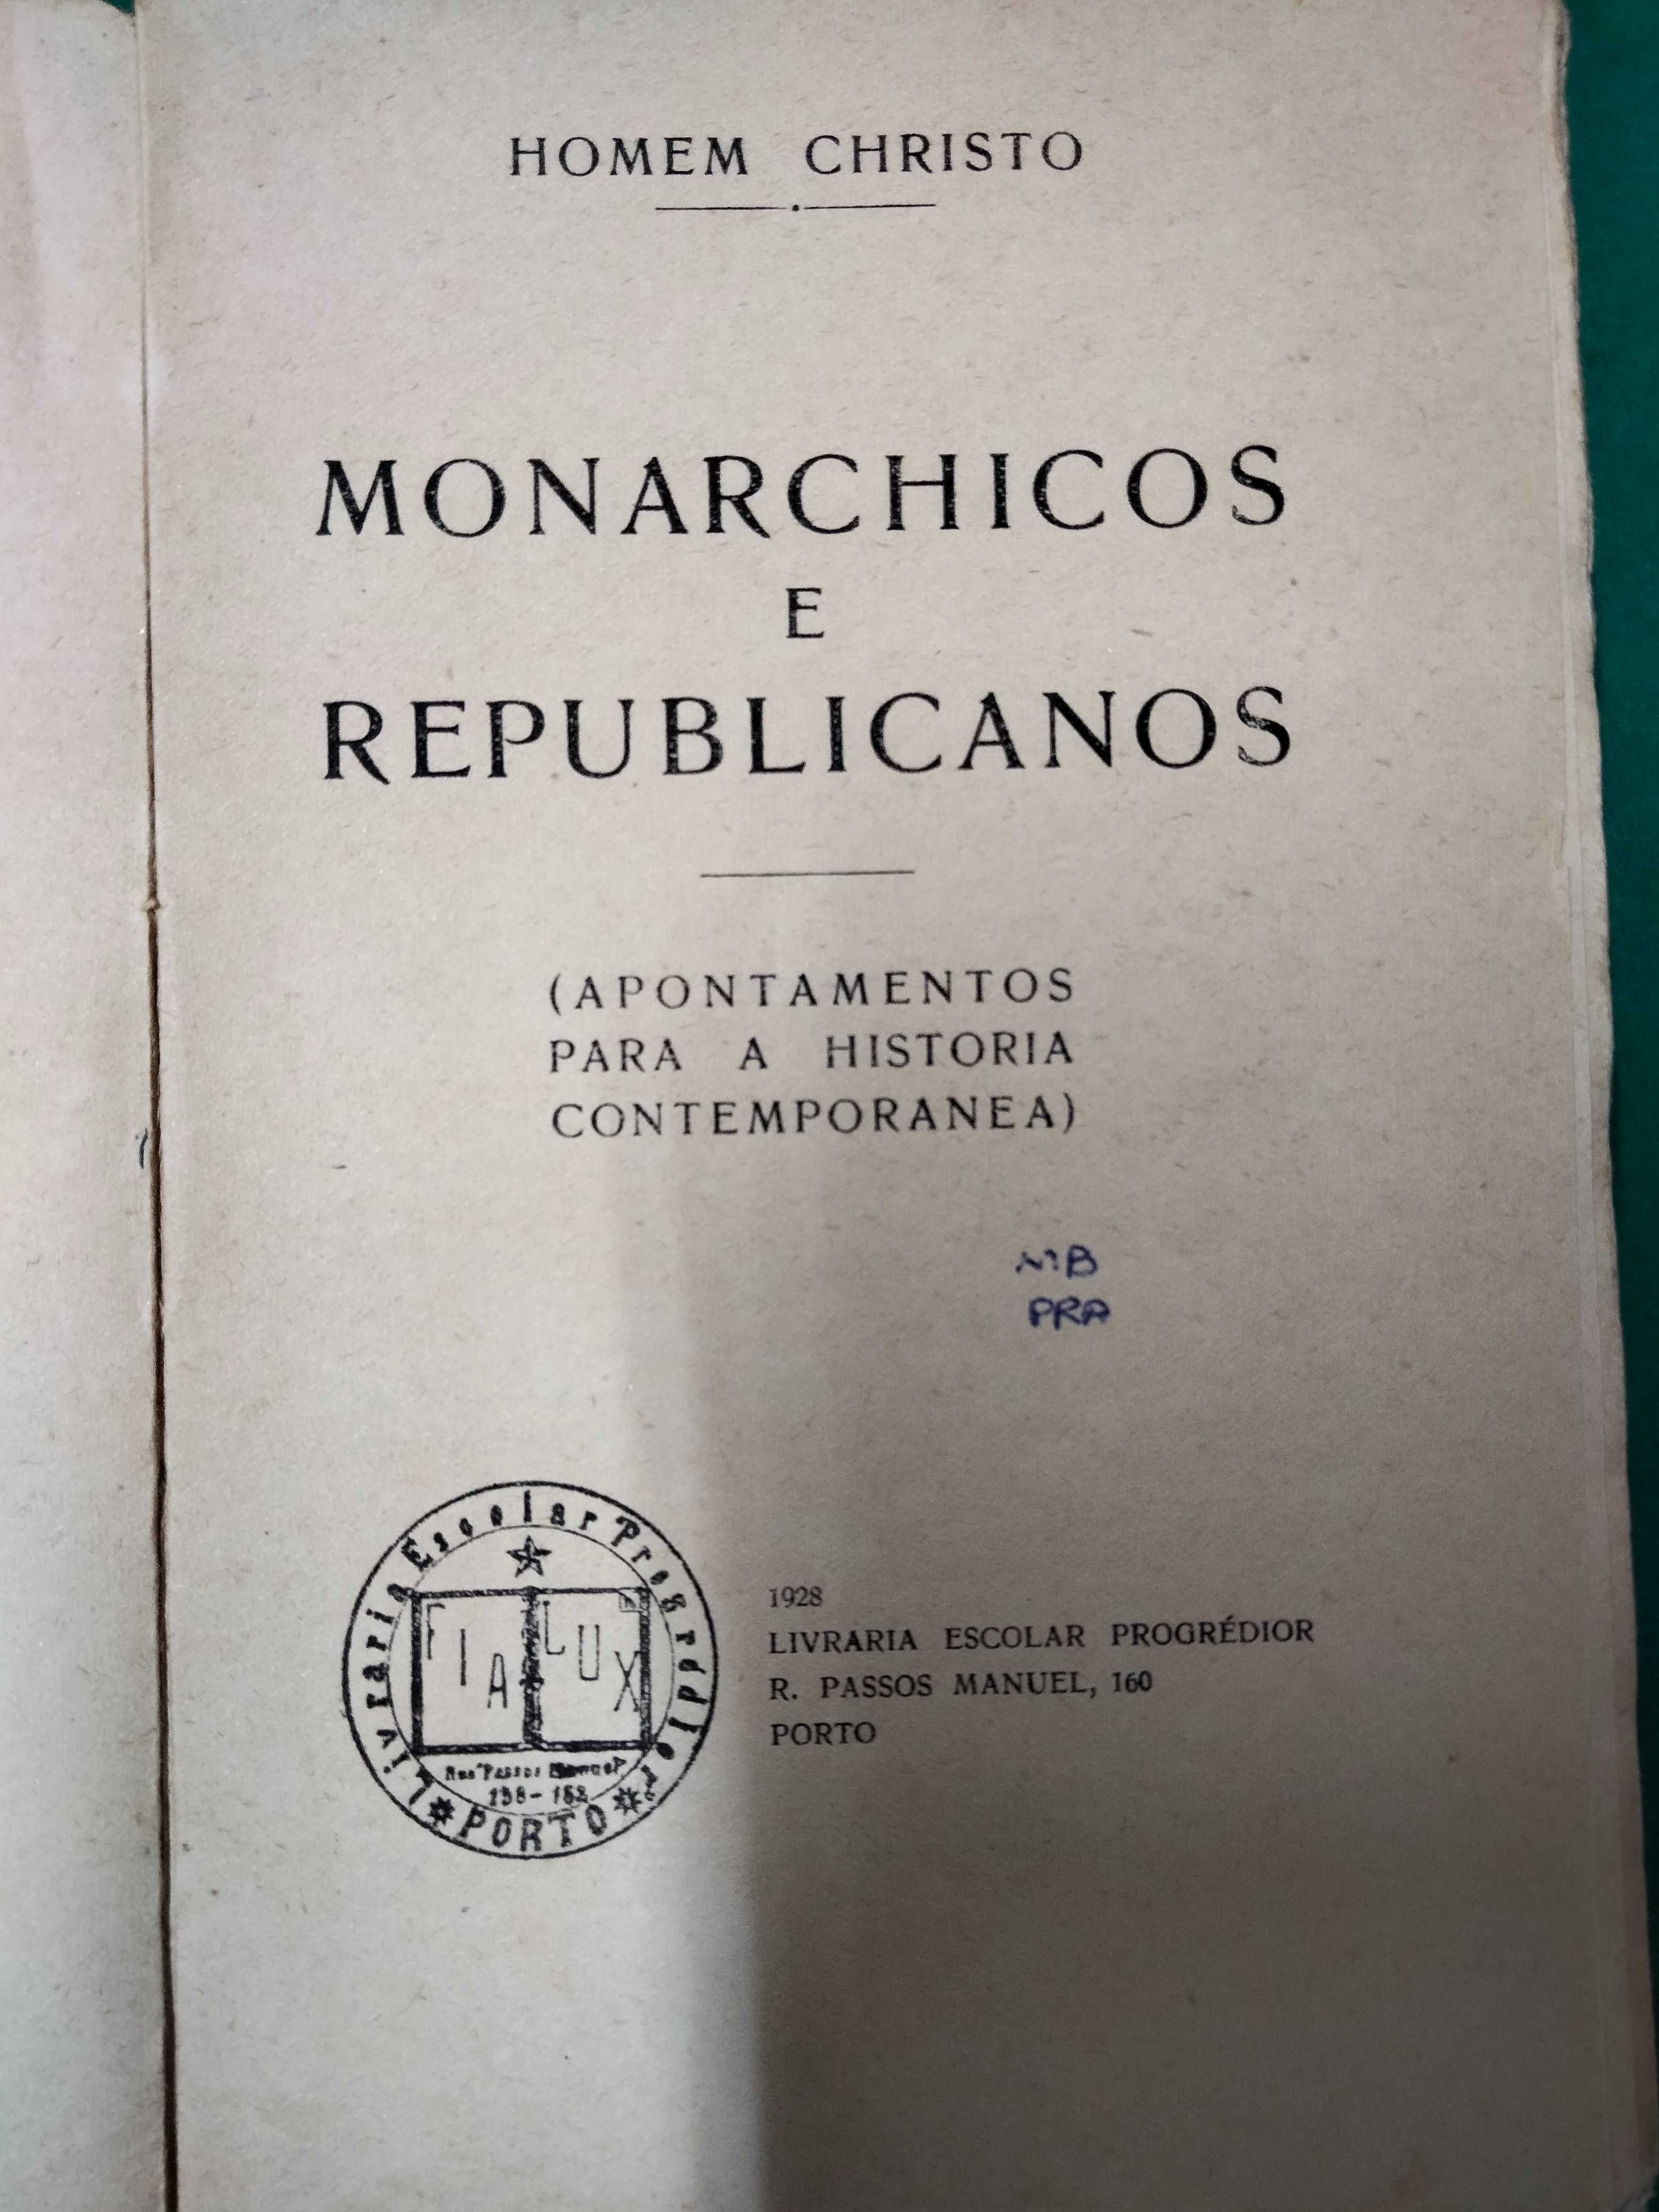 Monarchicos e Republicanos - Homem Christo